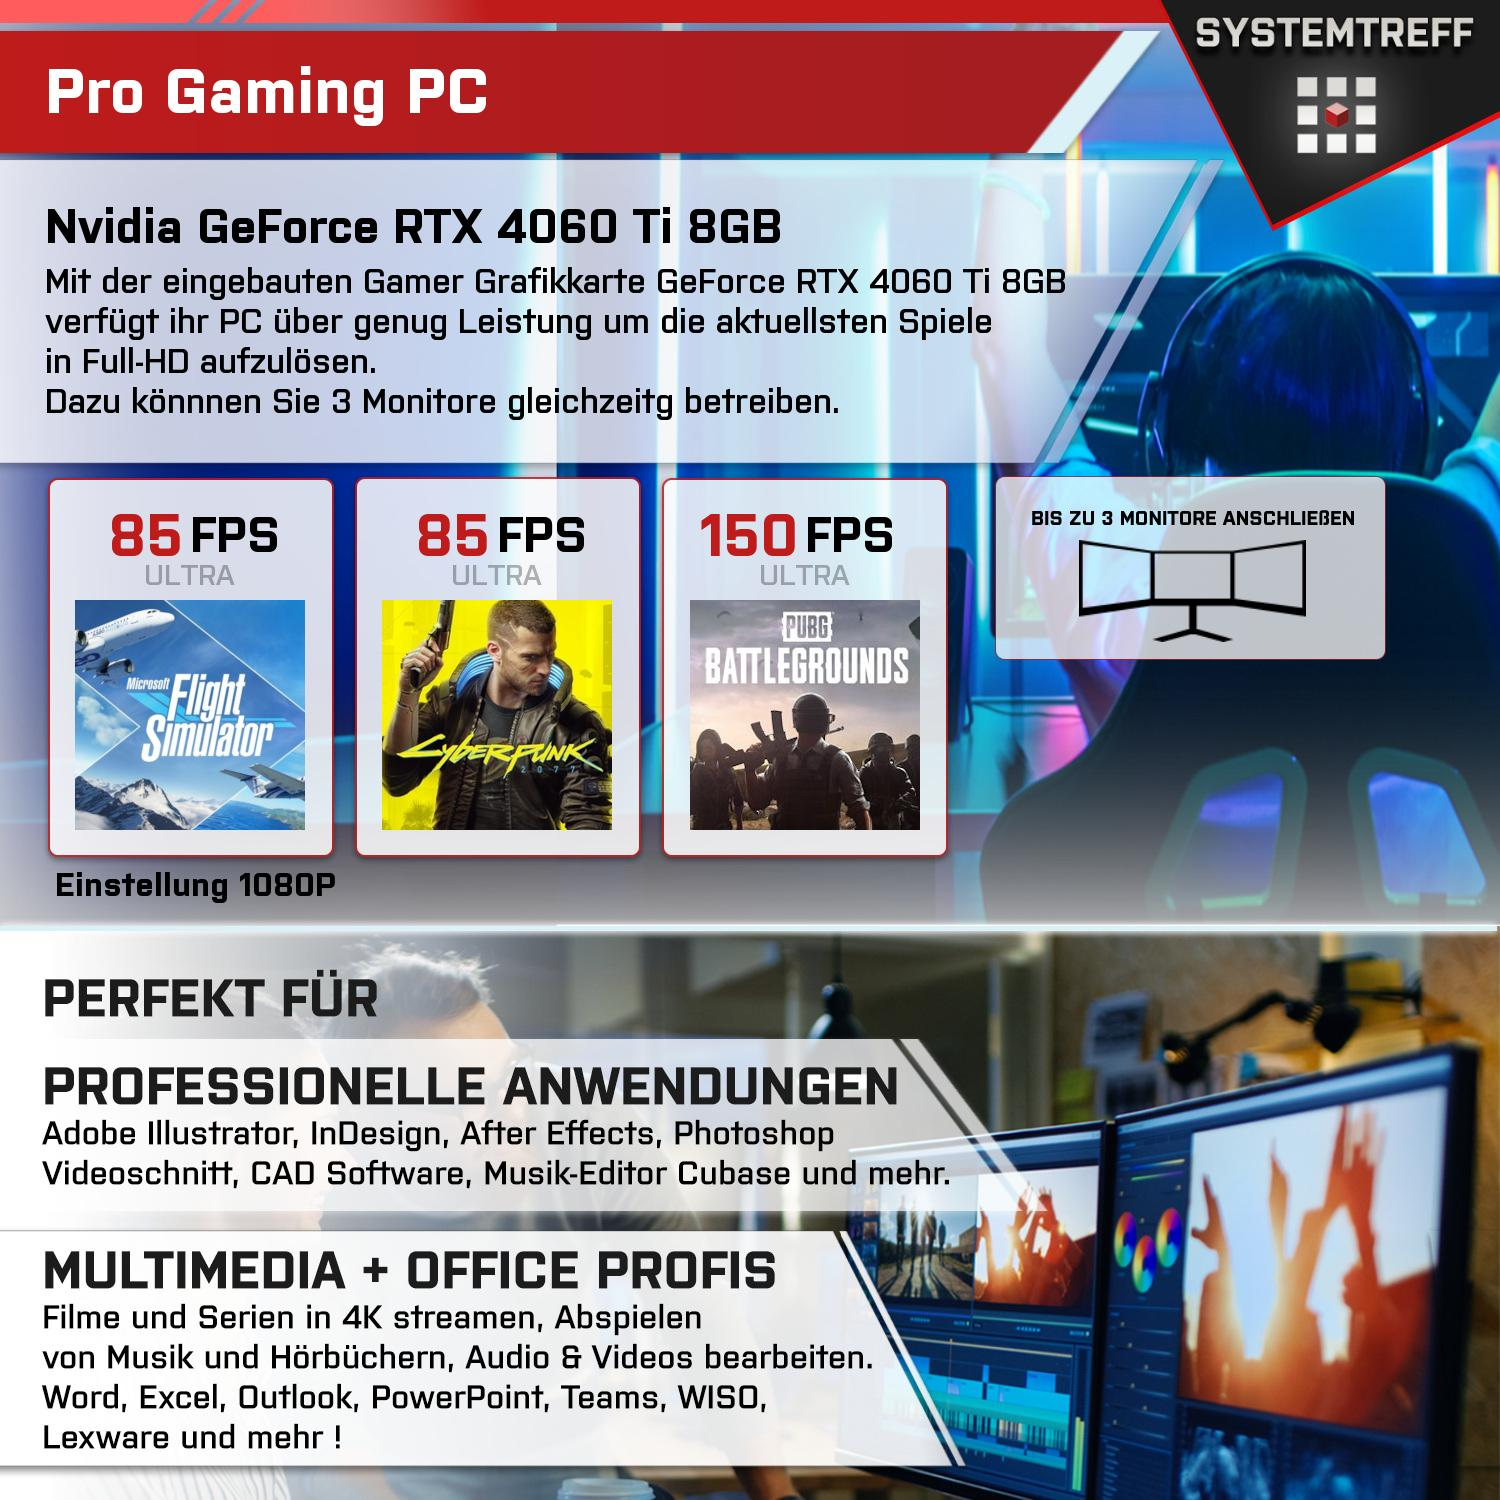 SYSTEMTREFF Gaming Komplett PC 32 4060Ti Komplett mit GB RAM, 8 mSSD, 3, 8GB GB 9 AMD 5950X GB Ryzen 1000 Nvidia DLSS mit Prozessor, 5950X, GeForce GDDR6 RTX